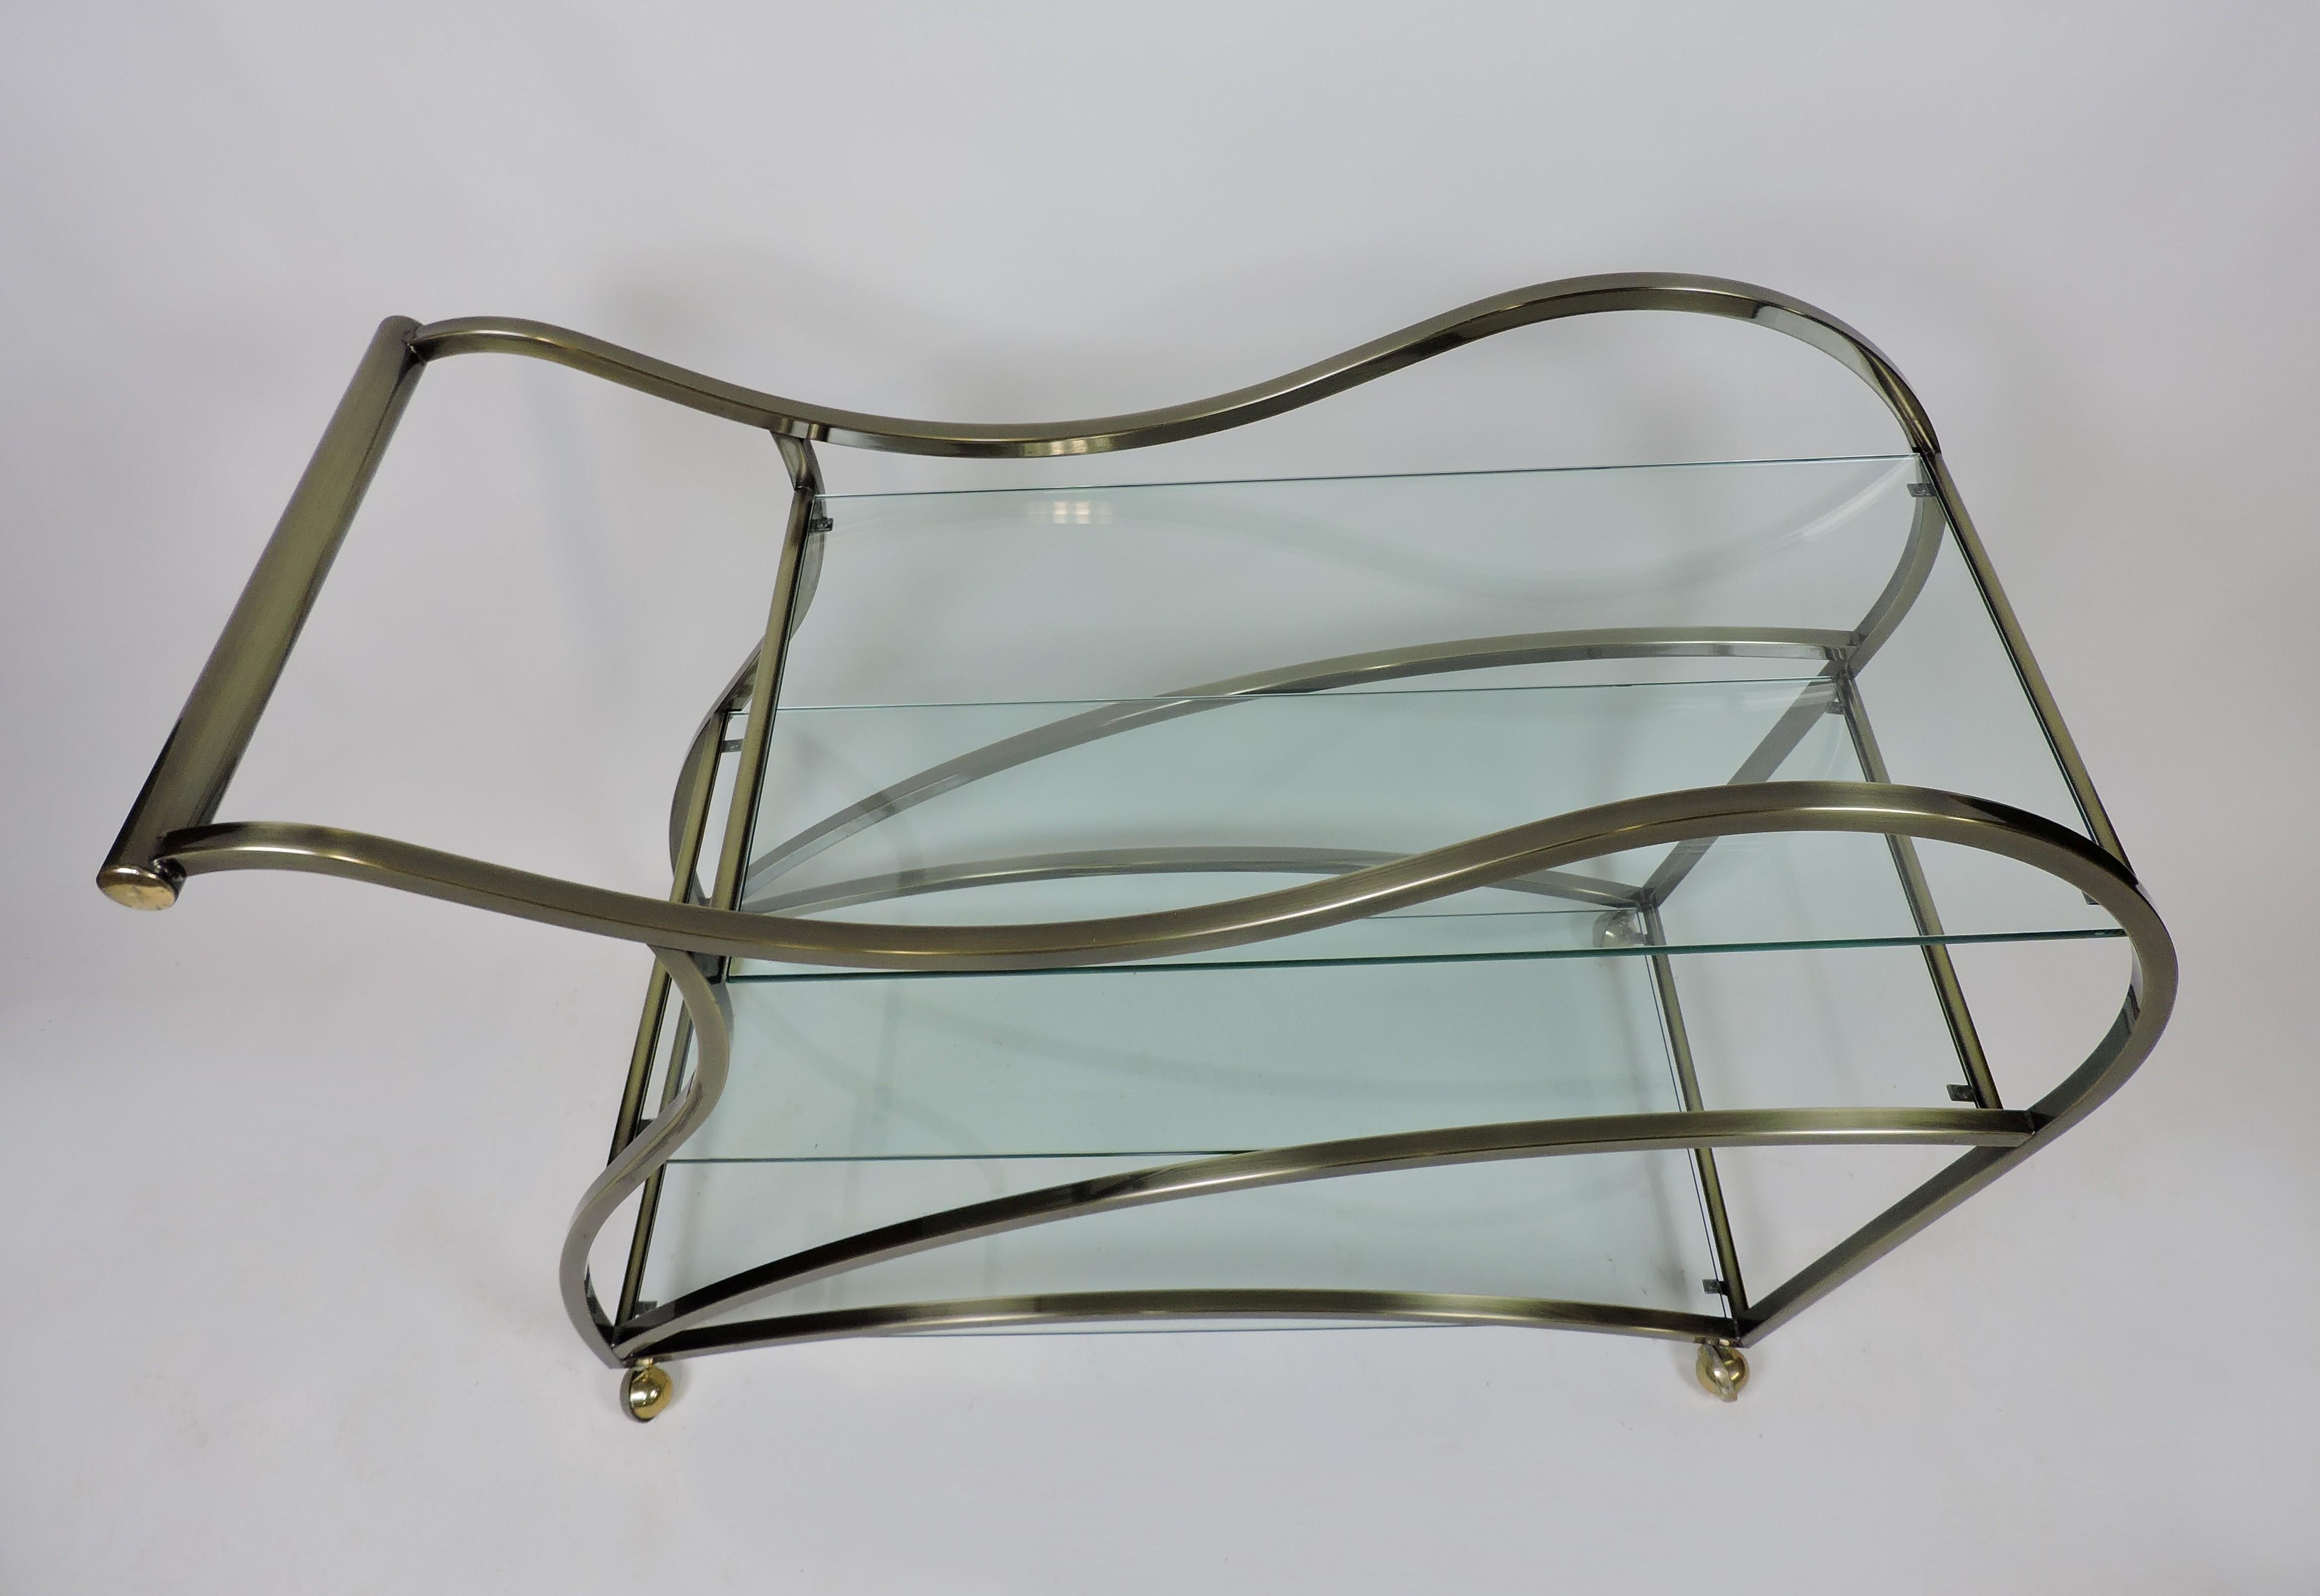 Glass DIA Design Institute of America Modern Curvaceous Sculptural Bar or Tea Cart